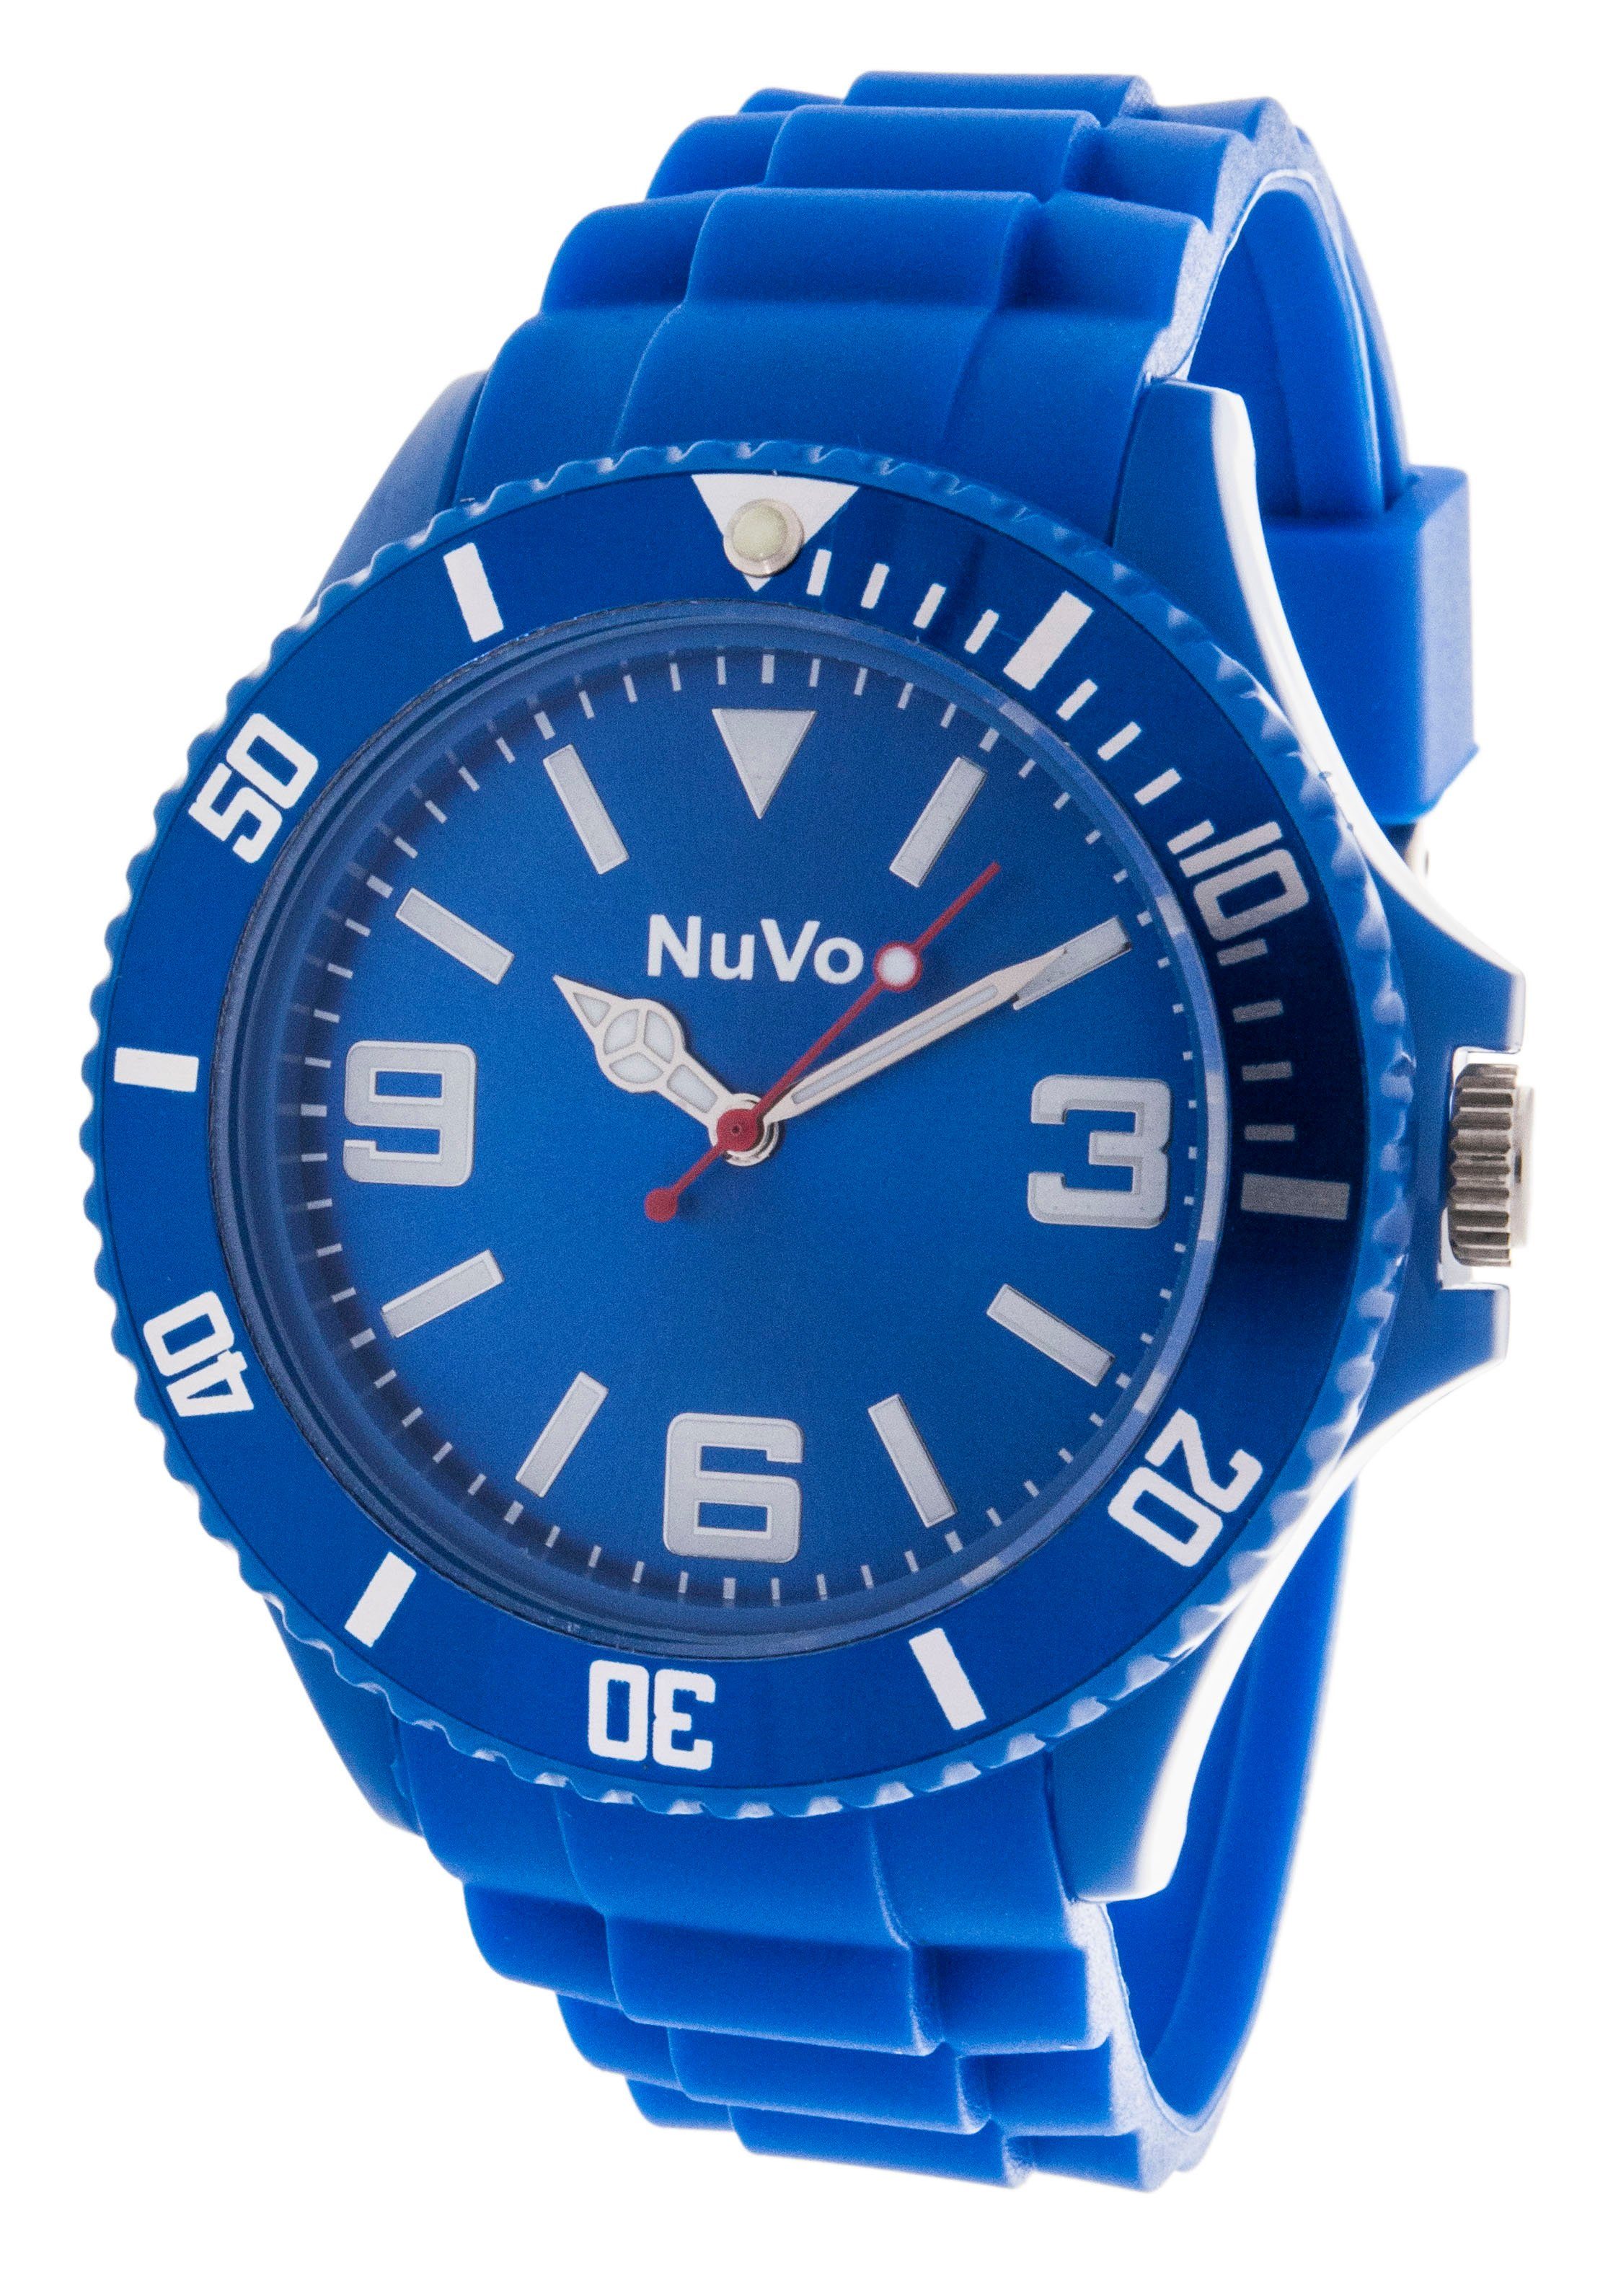 Nuvo Quarzuhr Modische Unisex Armbanduhr mit sportlichem Design | Quarzuhren